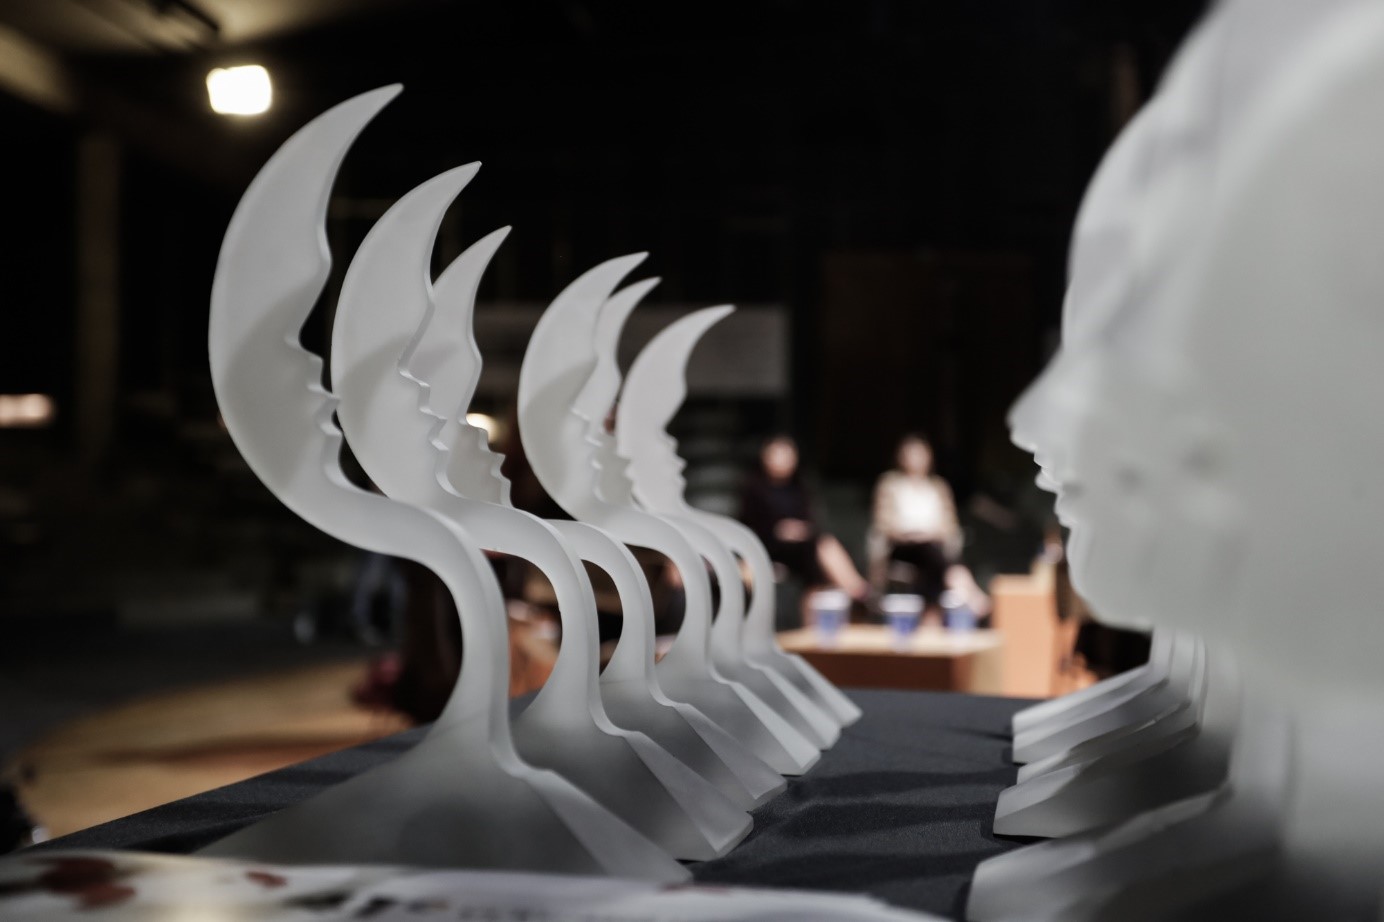 Troféu símbolo do Prêmio – a meia lua recortada com a silhueta de Vlado, uma criação do artista plástico Elifas Andreato. Foto:  Alice Vergueiro/Acervo PVH.